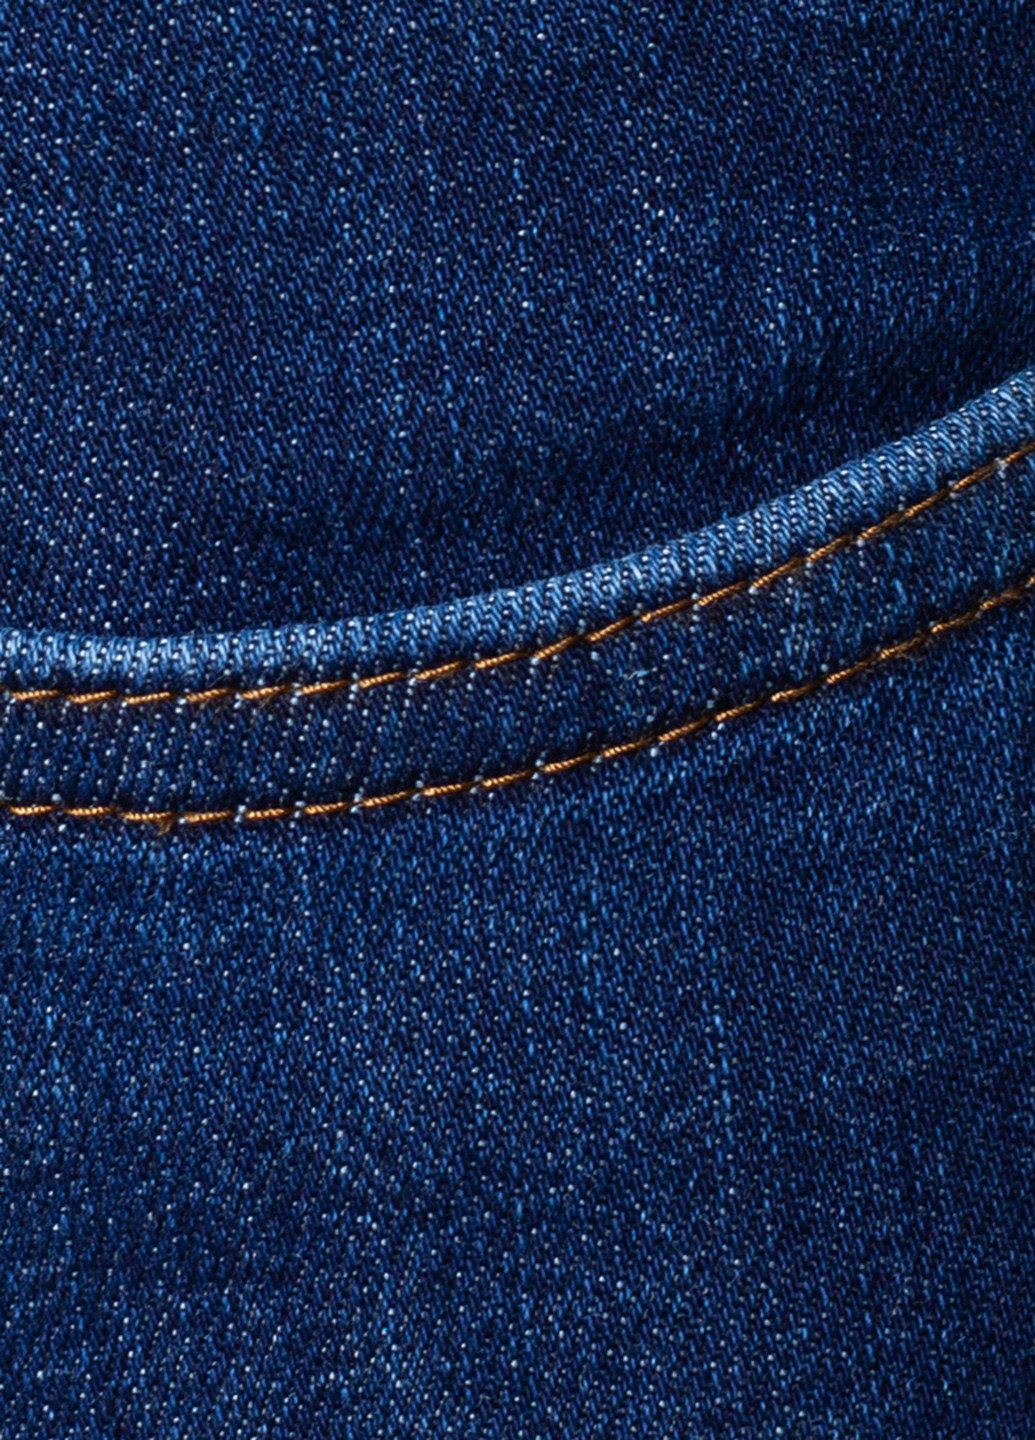 Темно-синяя джинсовая однотонная юбка Arber Woman карандаш